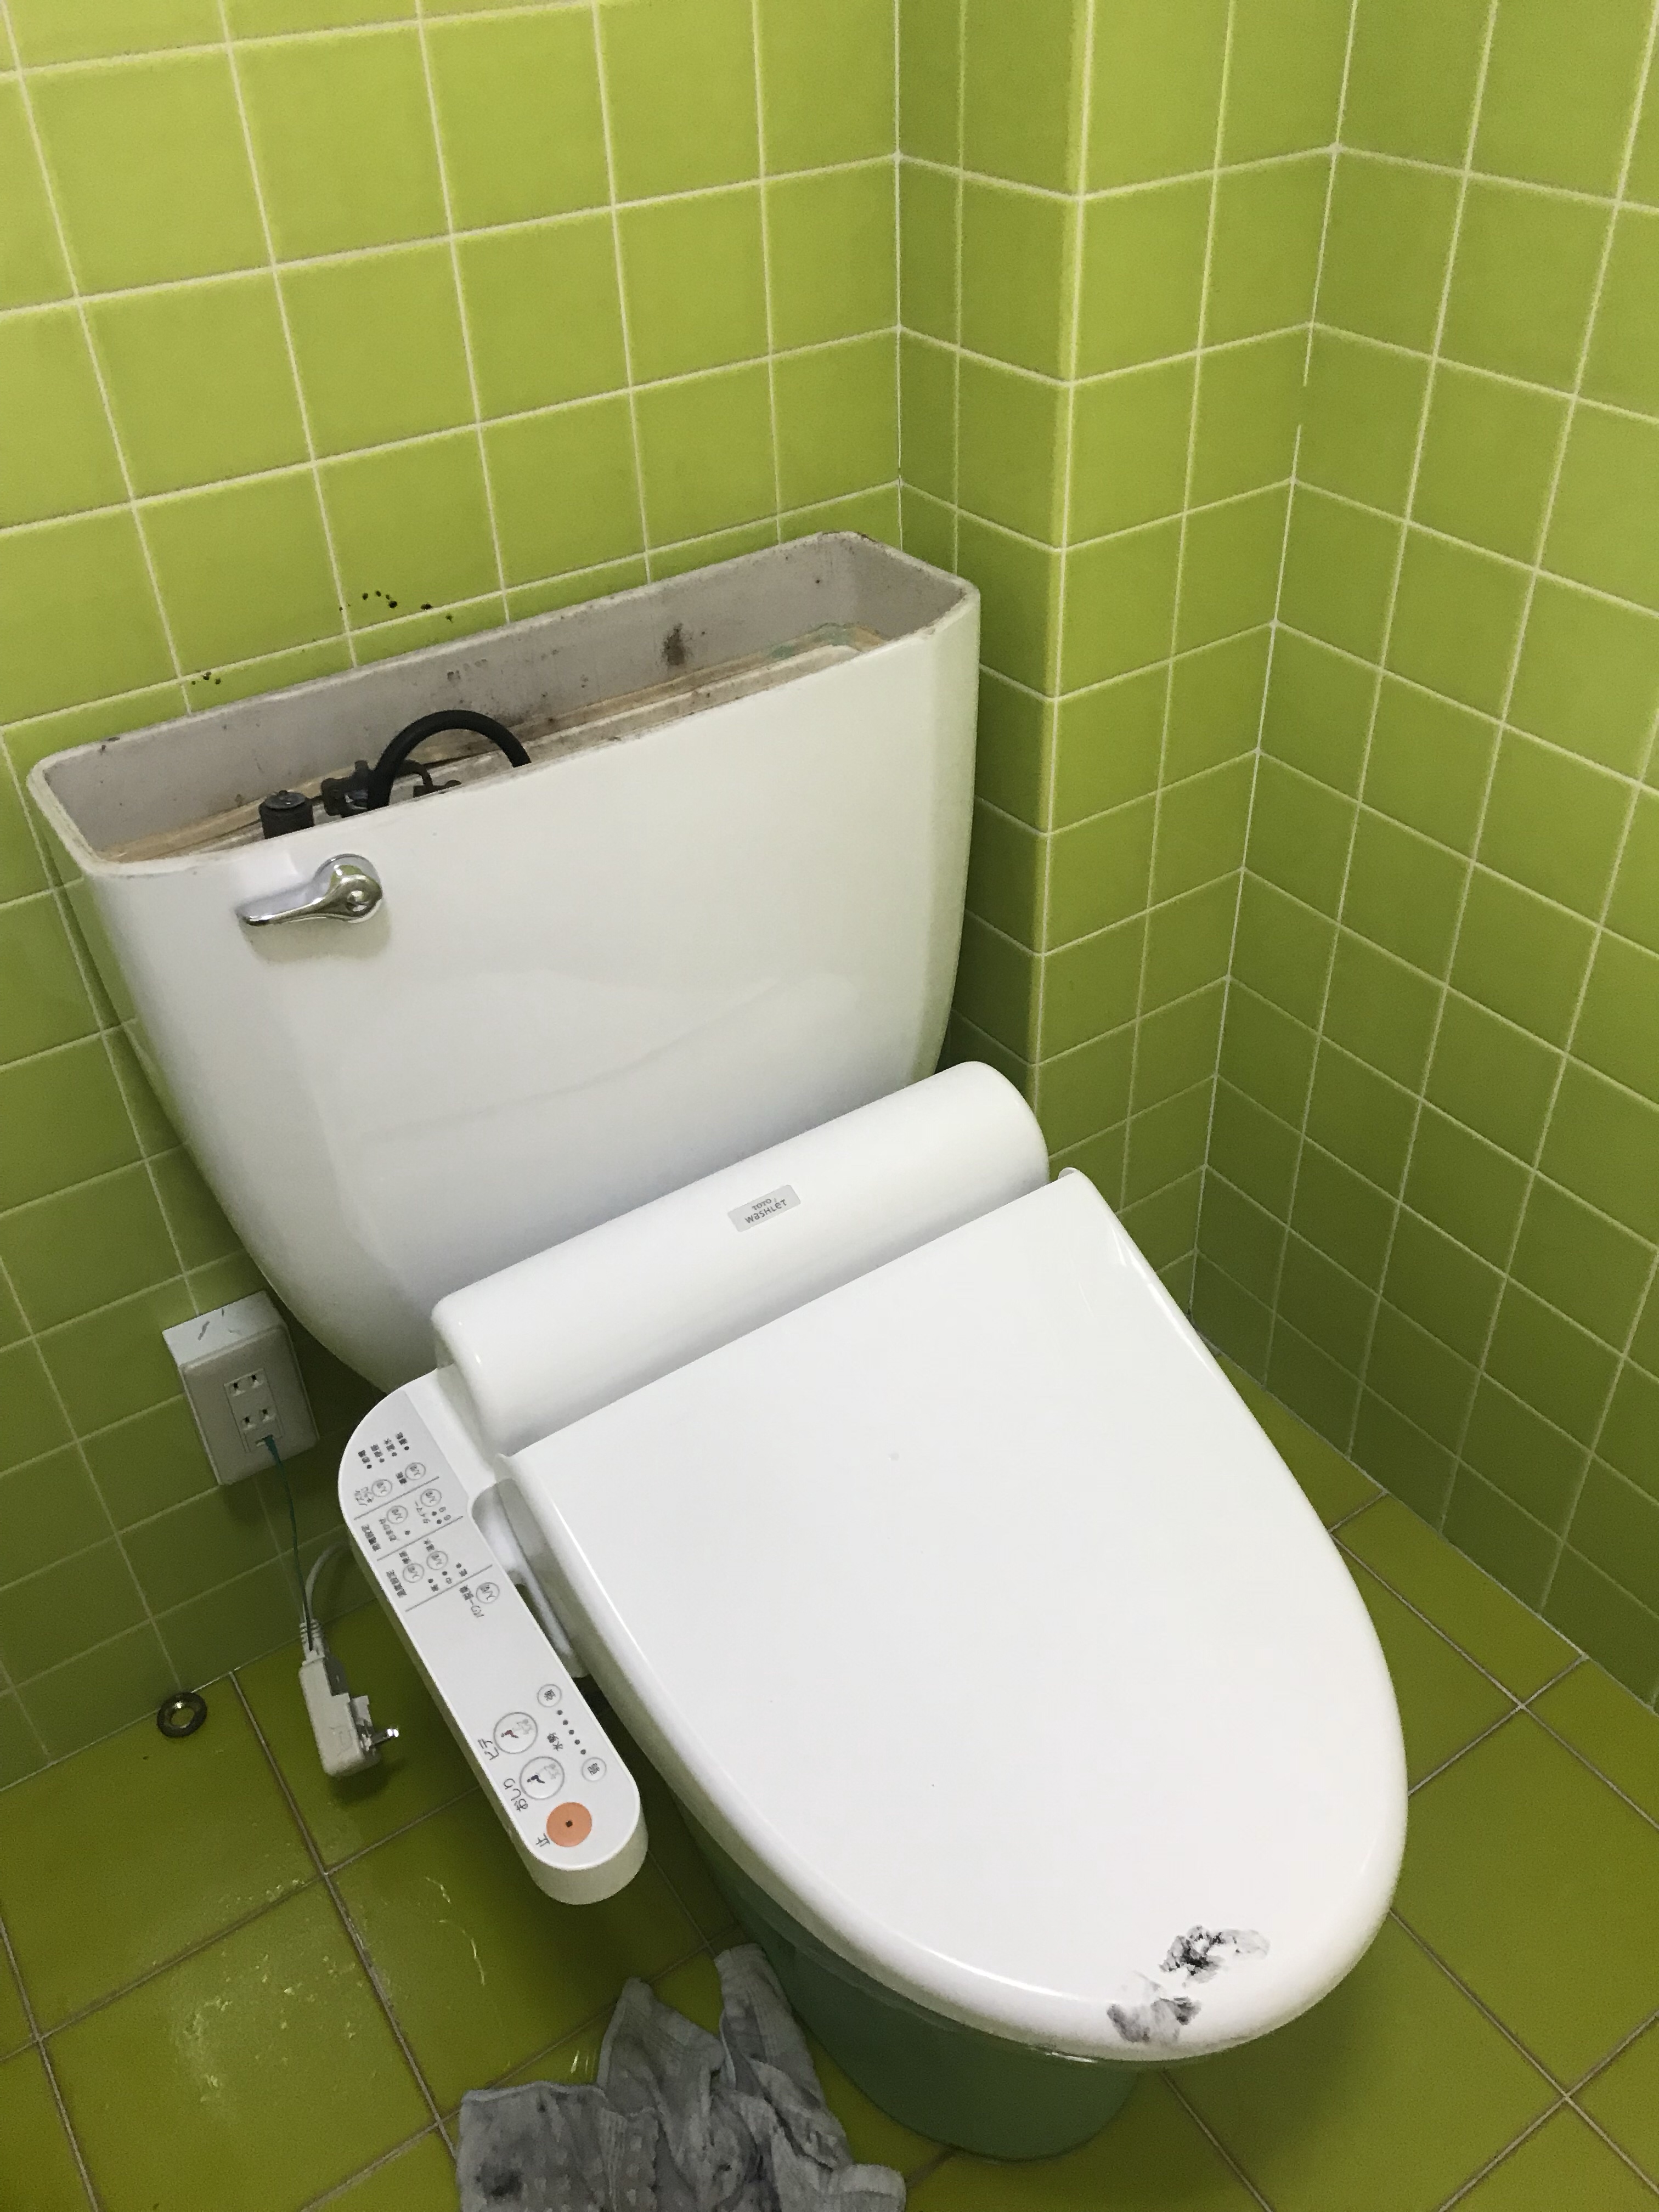 トイレタンクの水漏れ 水が止まらない 京都市 水もれドルフィン